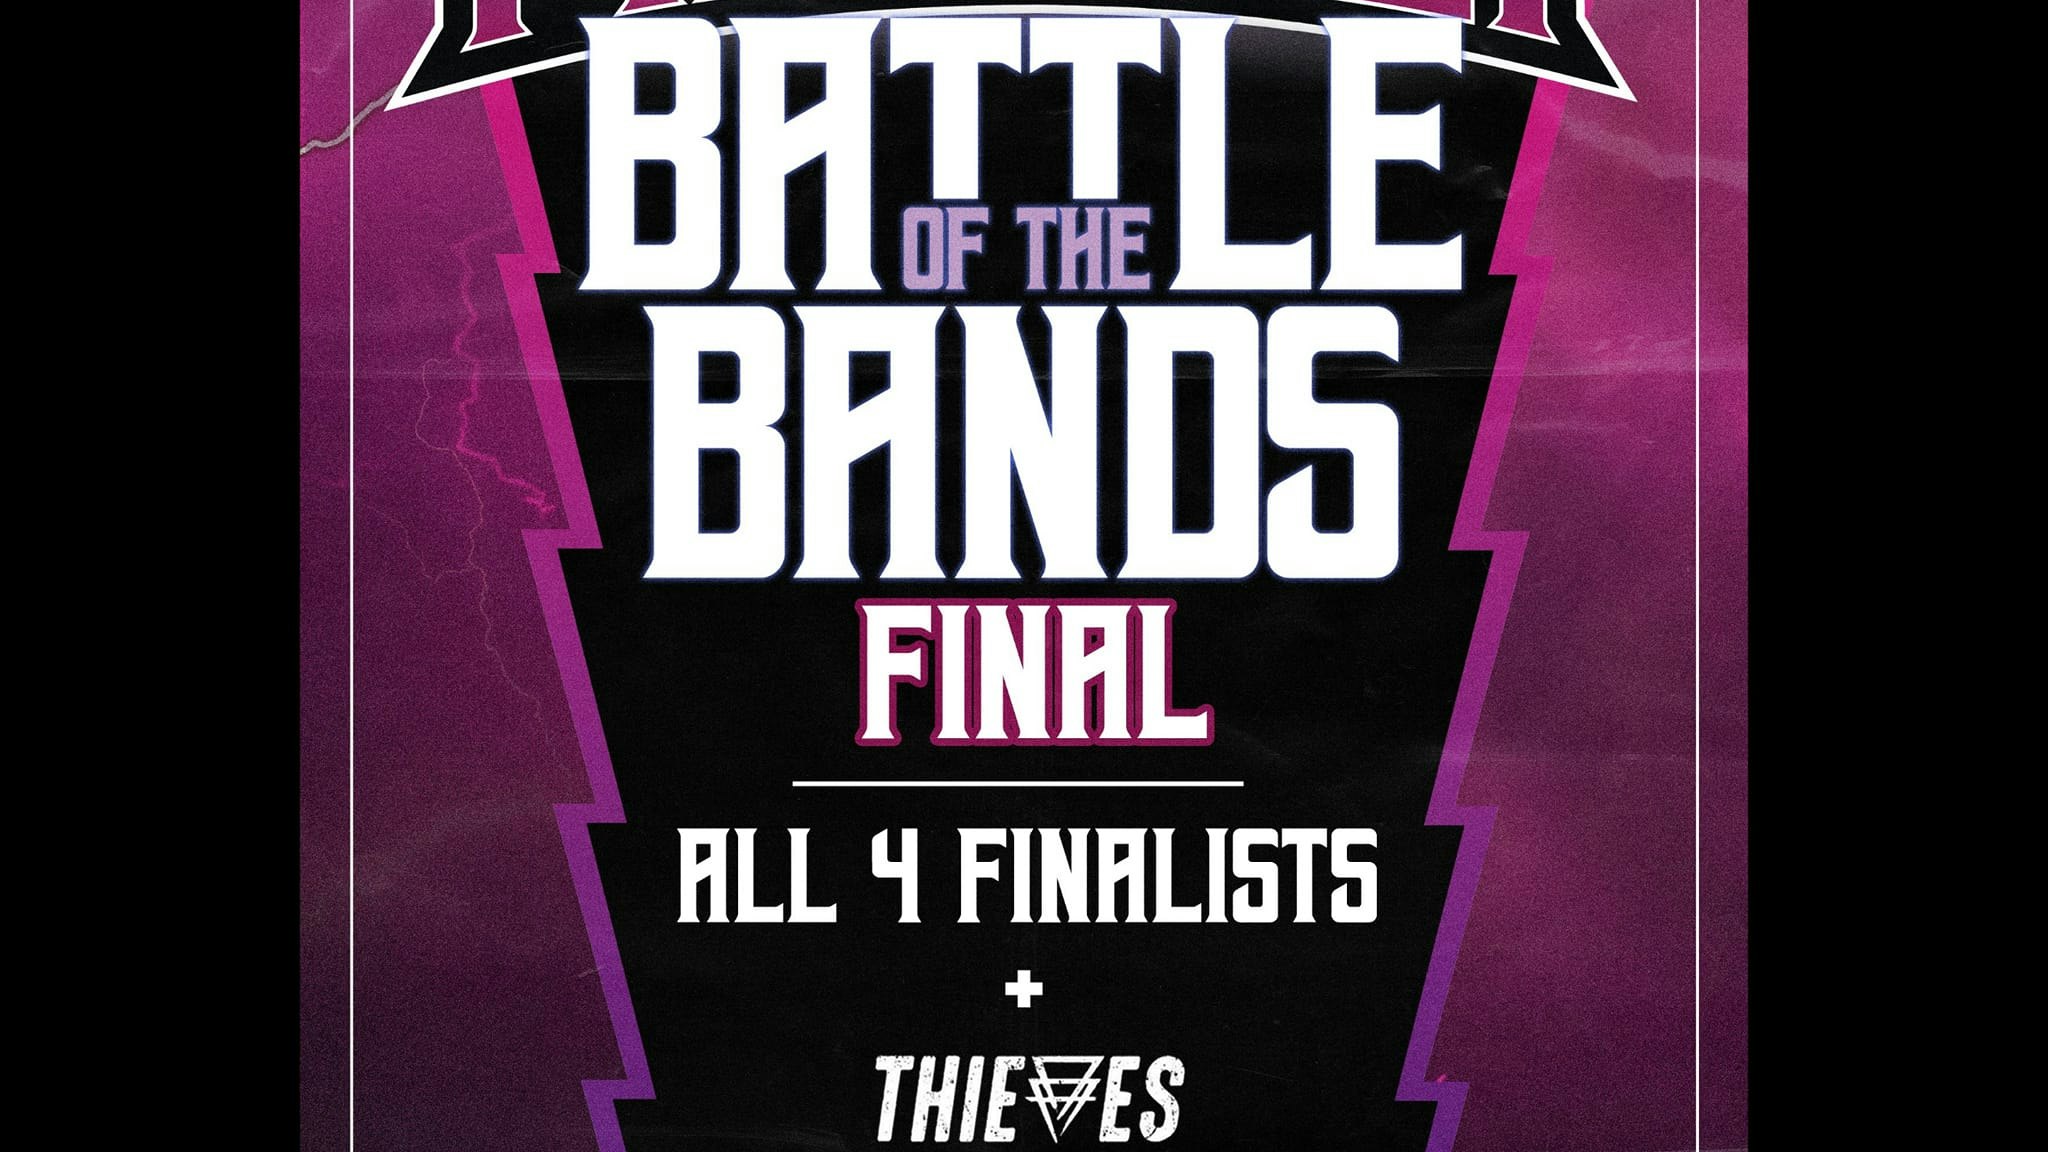 Firevolt Battle of the Bands Final